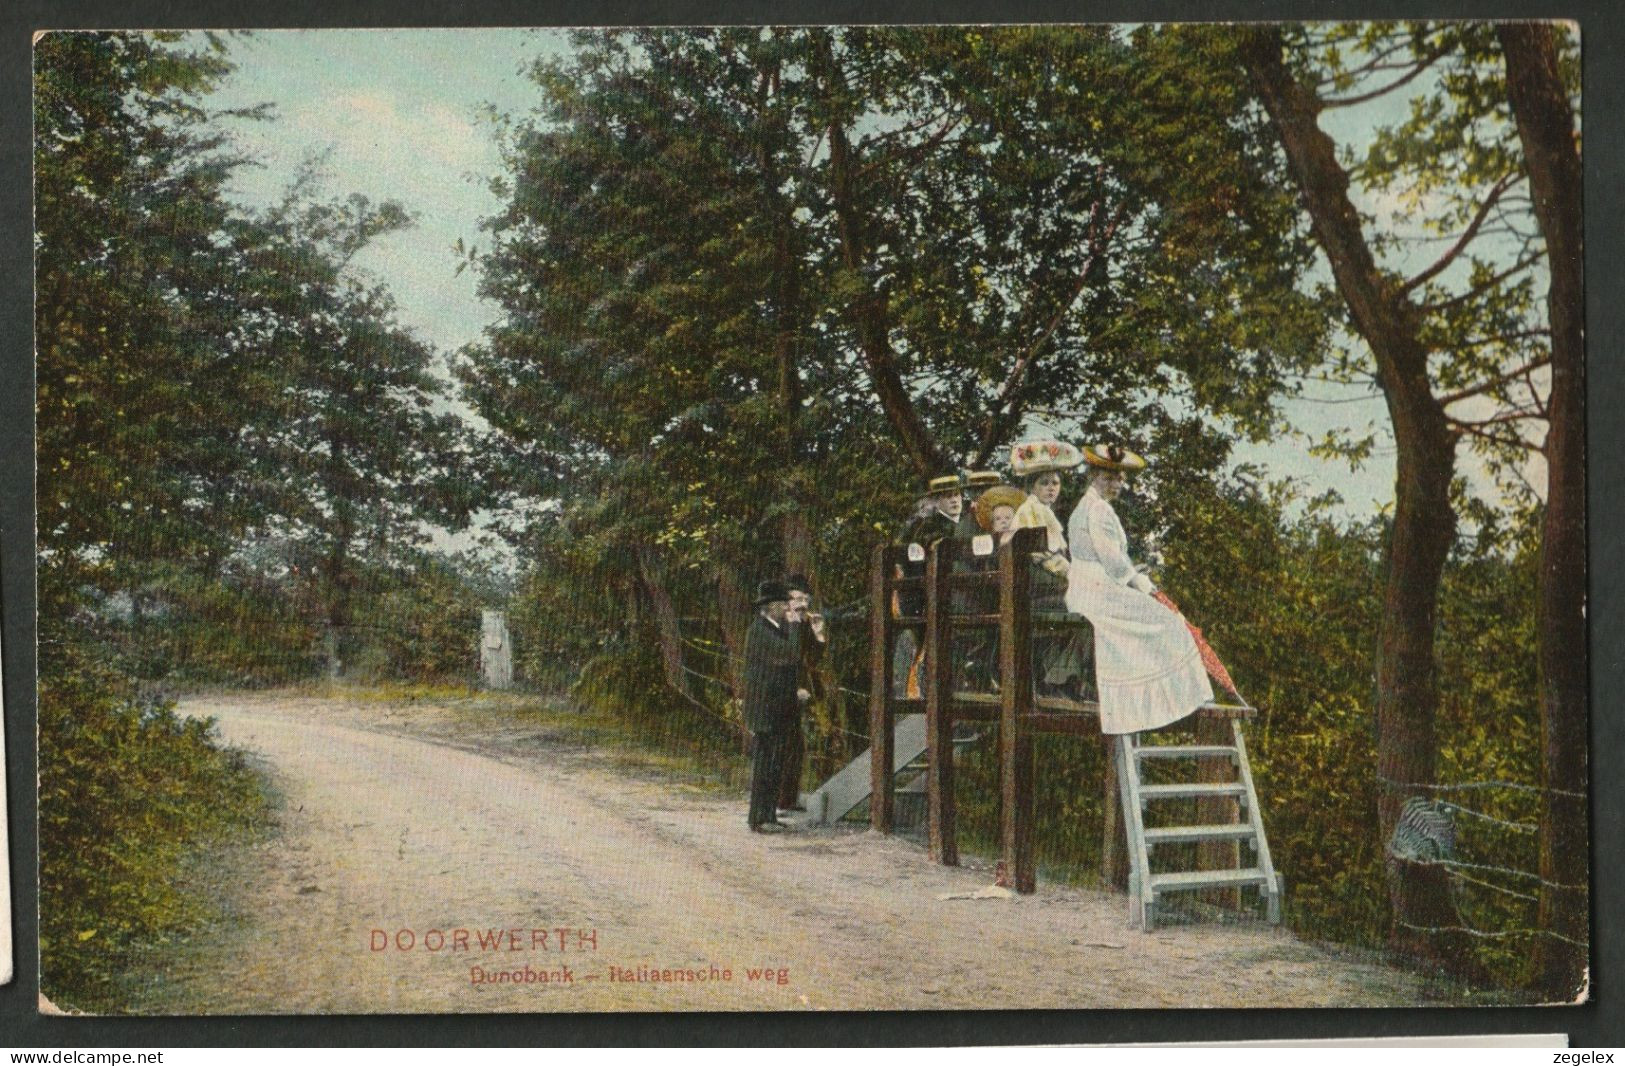 Doorwerth - Dunobank - Italiaansche Weg Met Prachtig Aangeklede Dames 1909 - Renkum